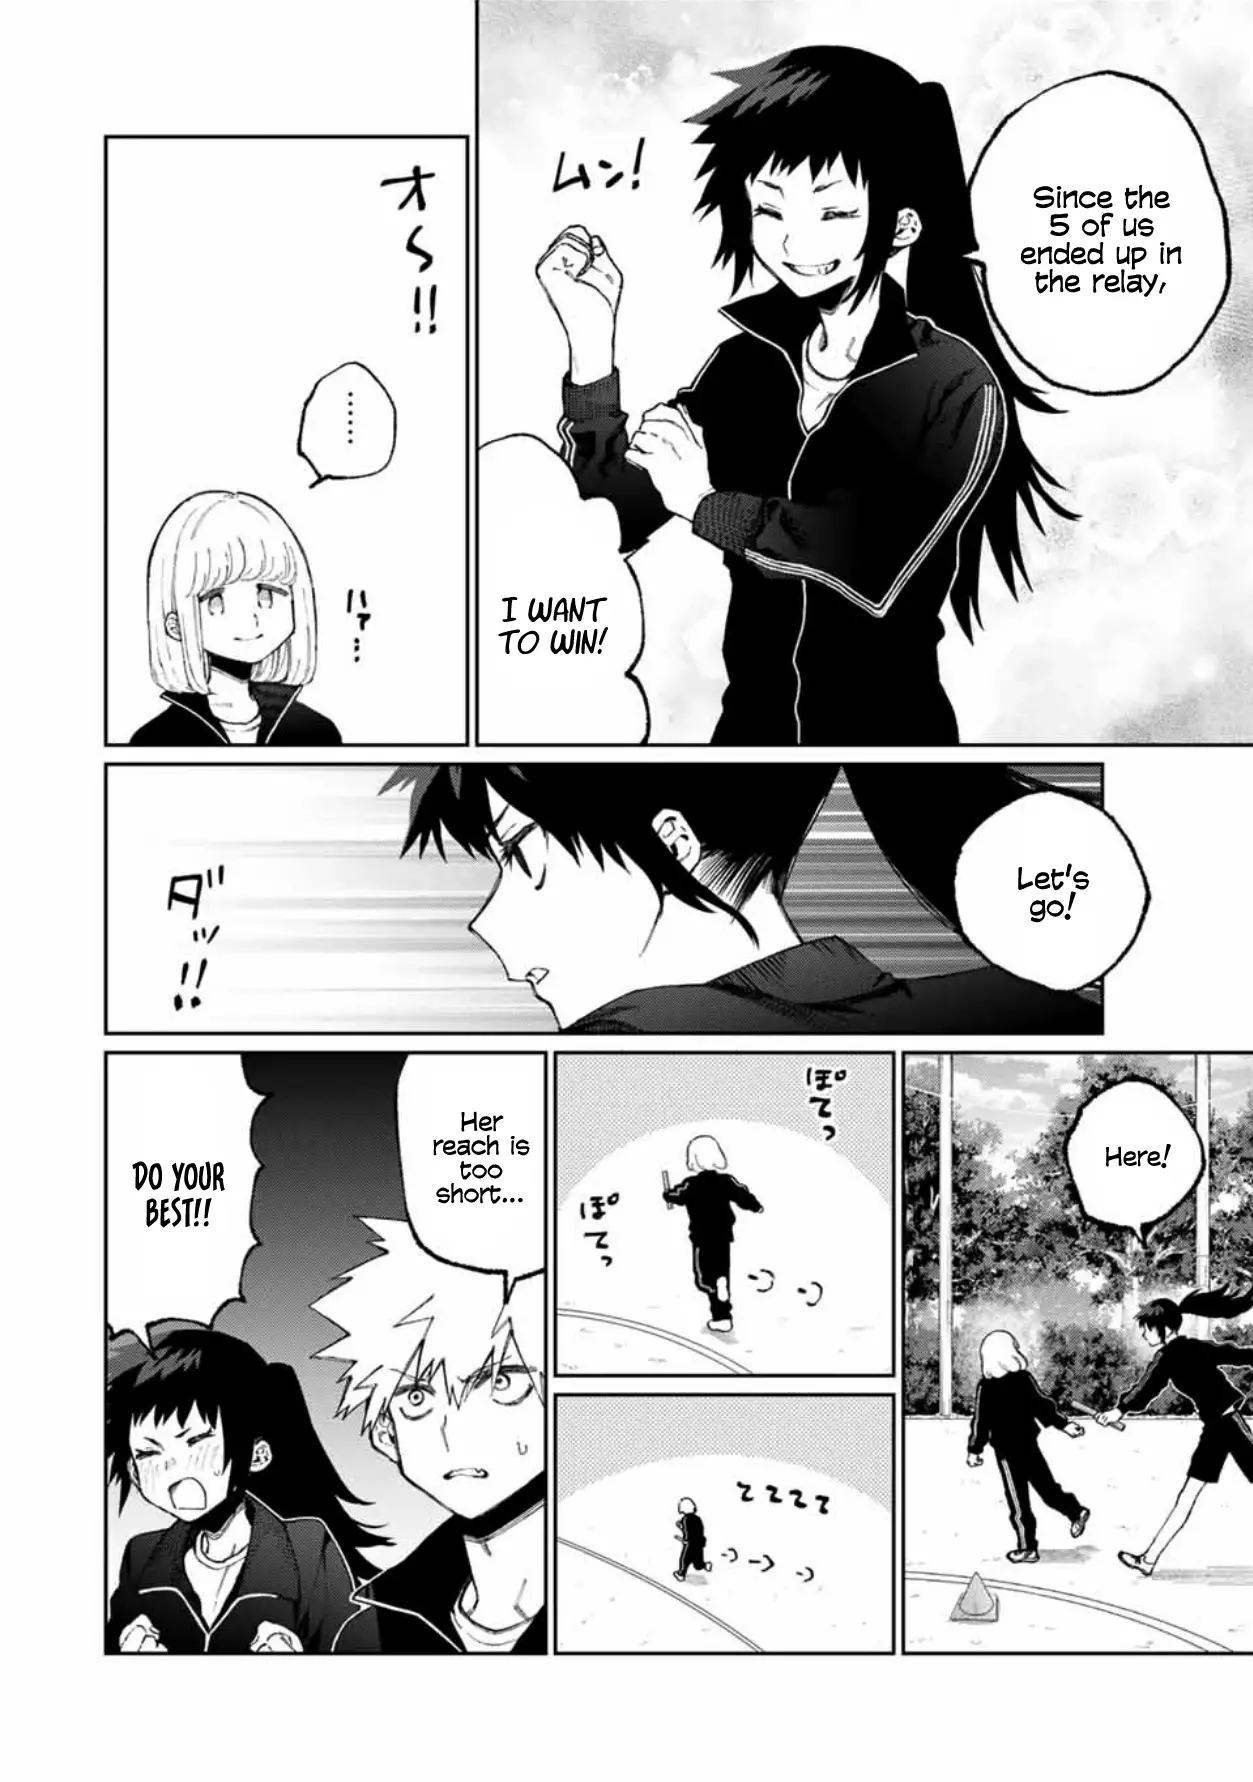 Shikimori's Not Just A Cutie - 51 page 3